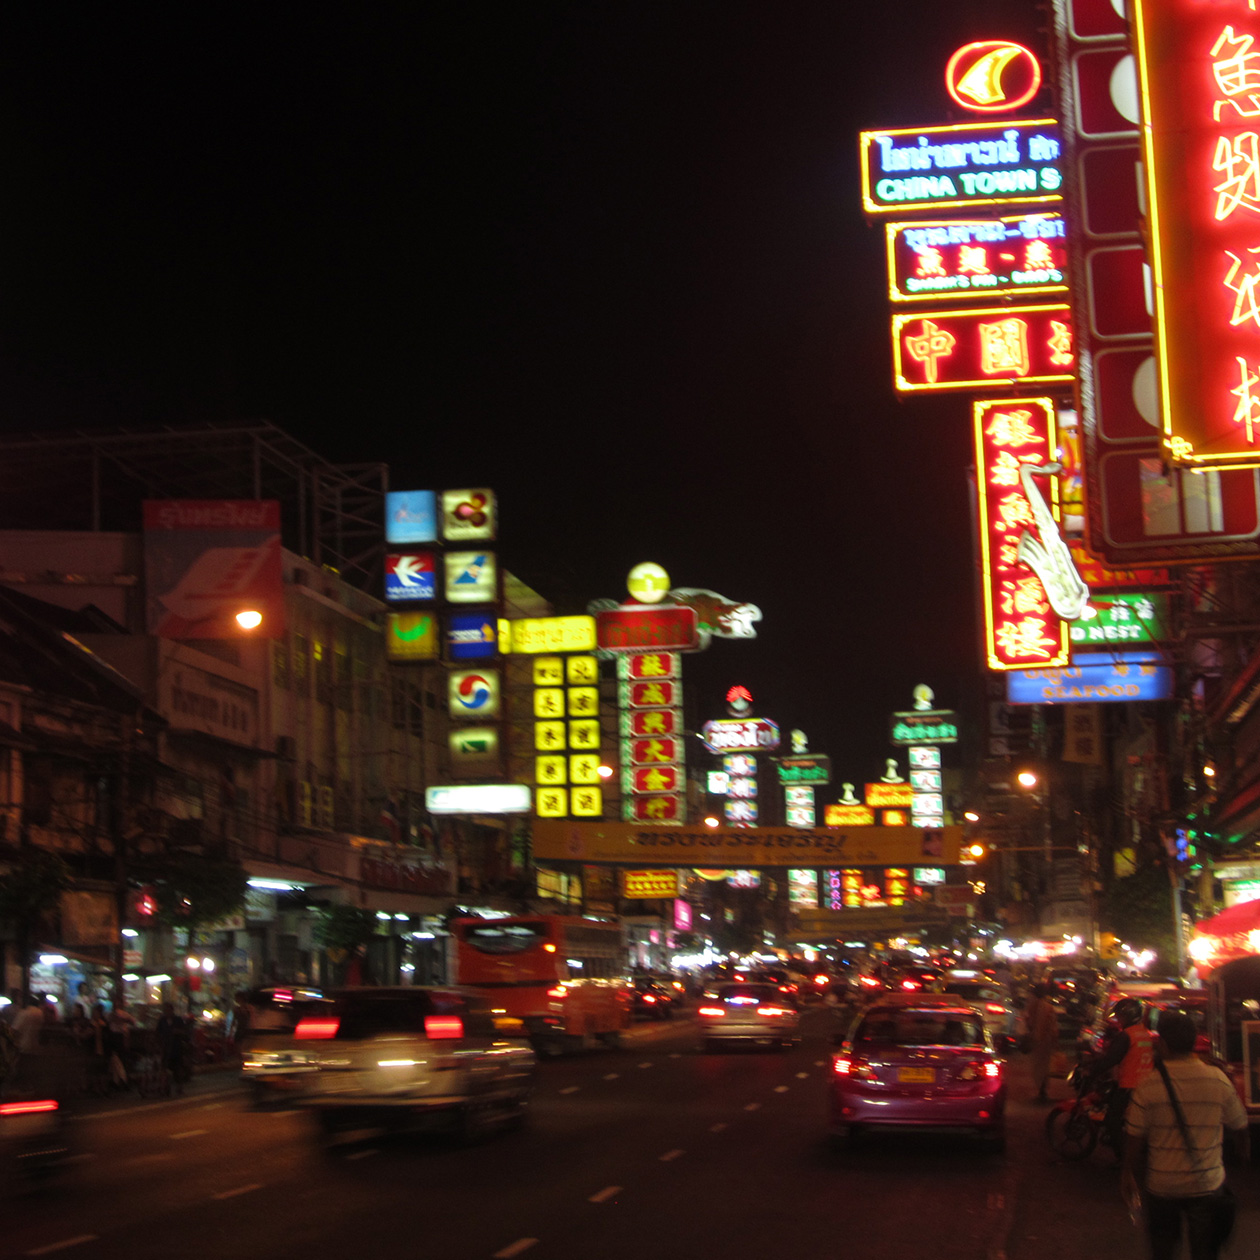 China Town Bangkok lights market Thailand